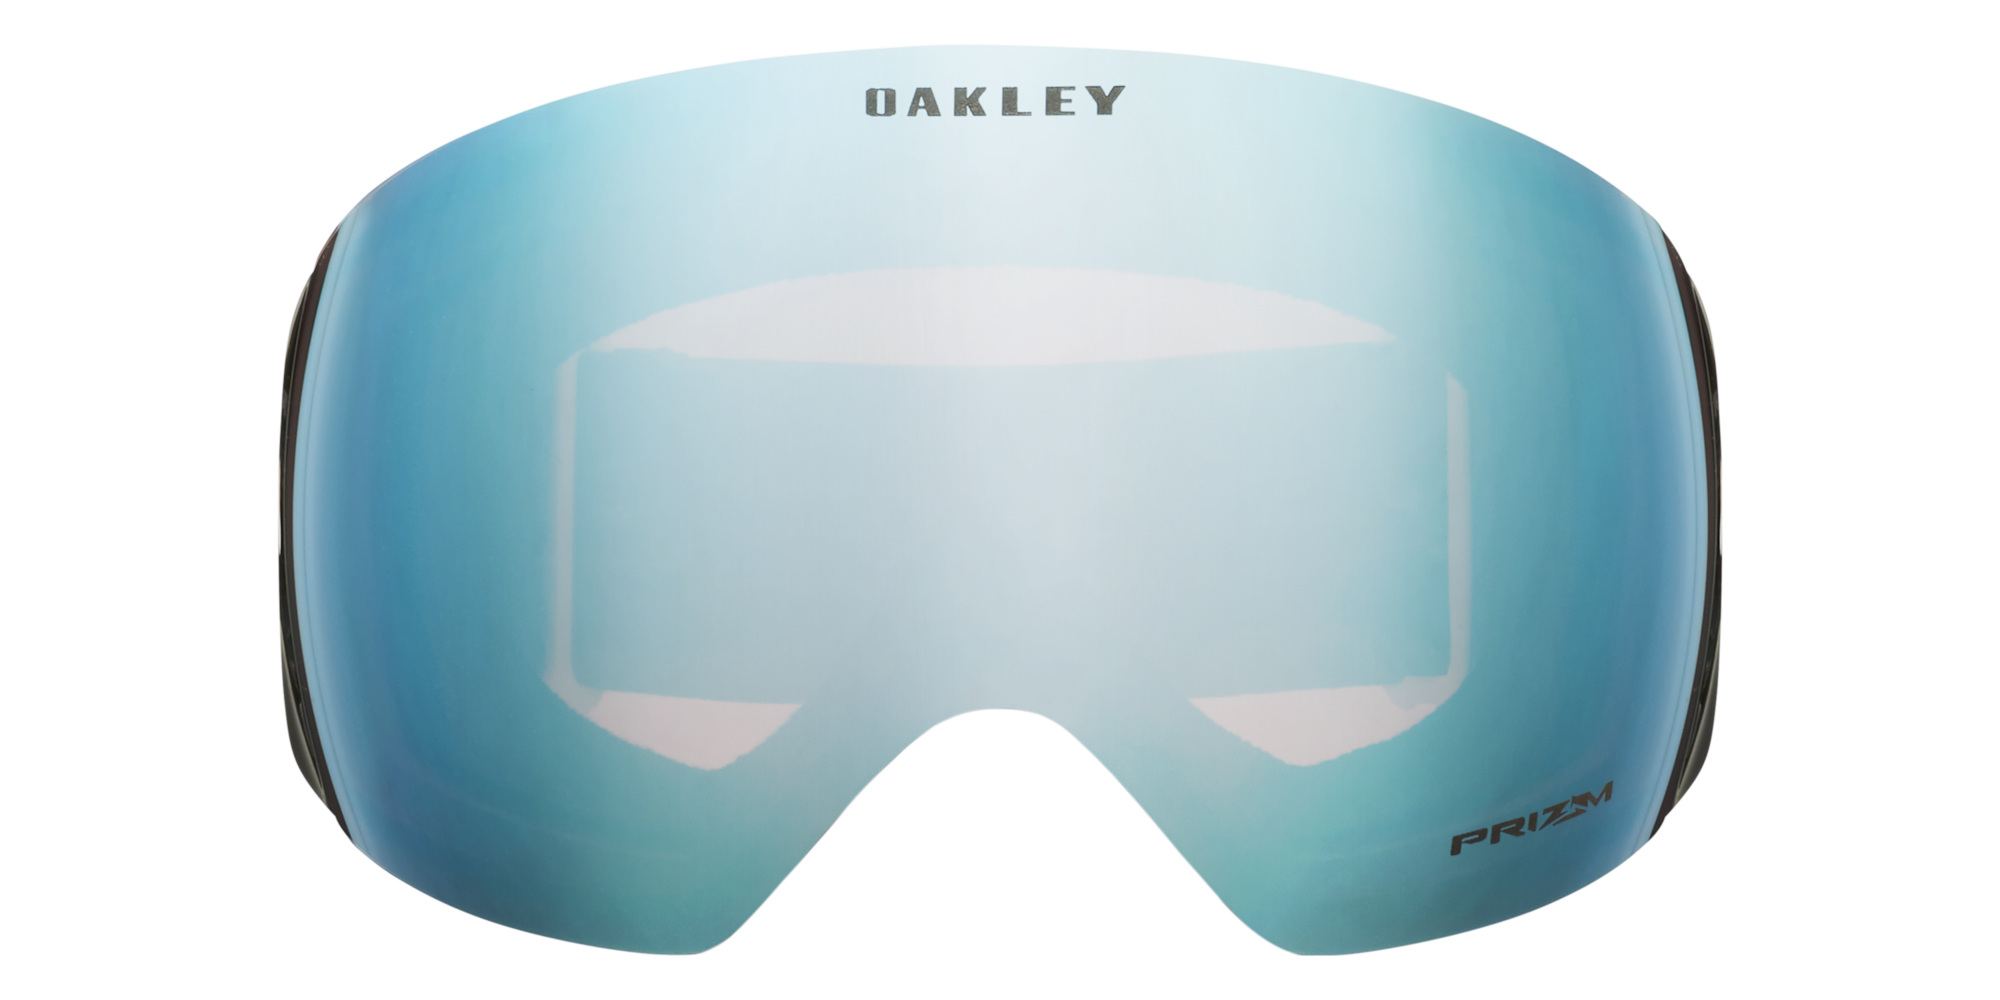 OAKLEY // LUNETTE SKI/SNOW ADULTE, FLIGHT DECK L Factory Pilot